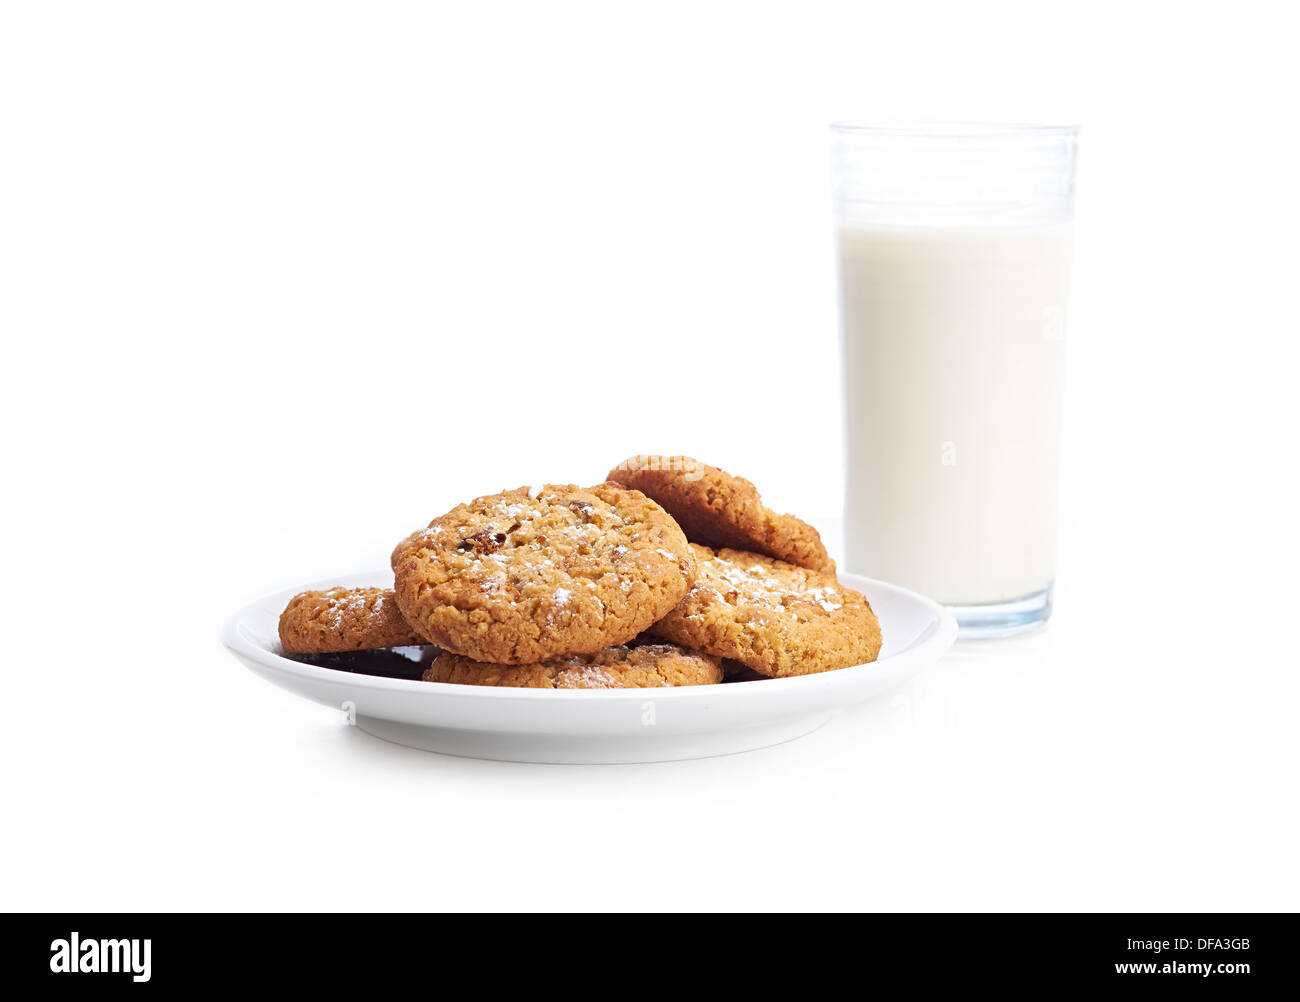 Ein Haufen von gemischten Cookies auf einem weißen Teller und Hintergrund mit einem Glas Milch. Stockfoto